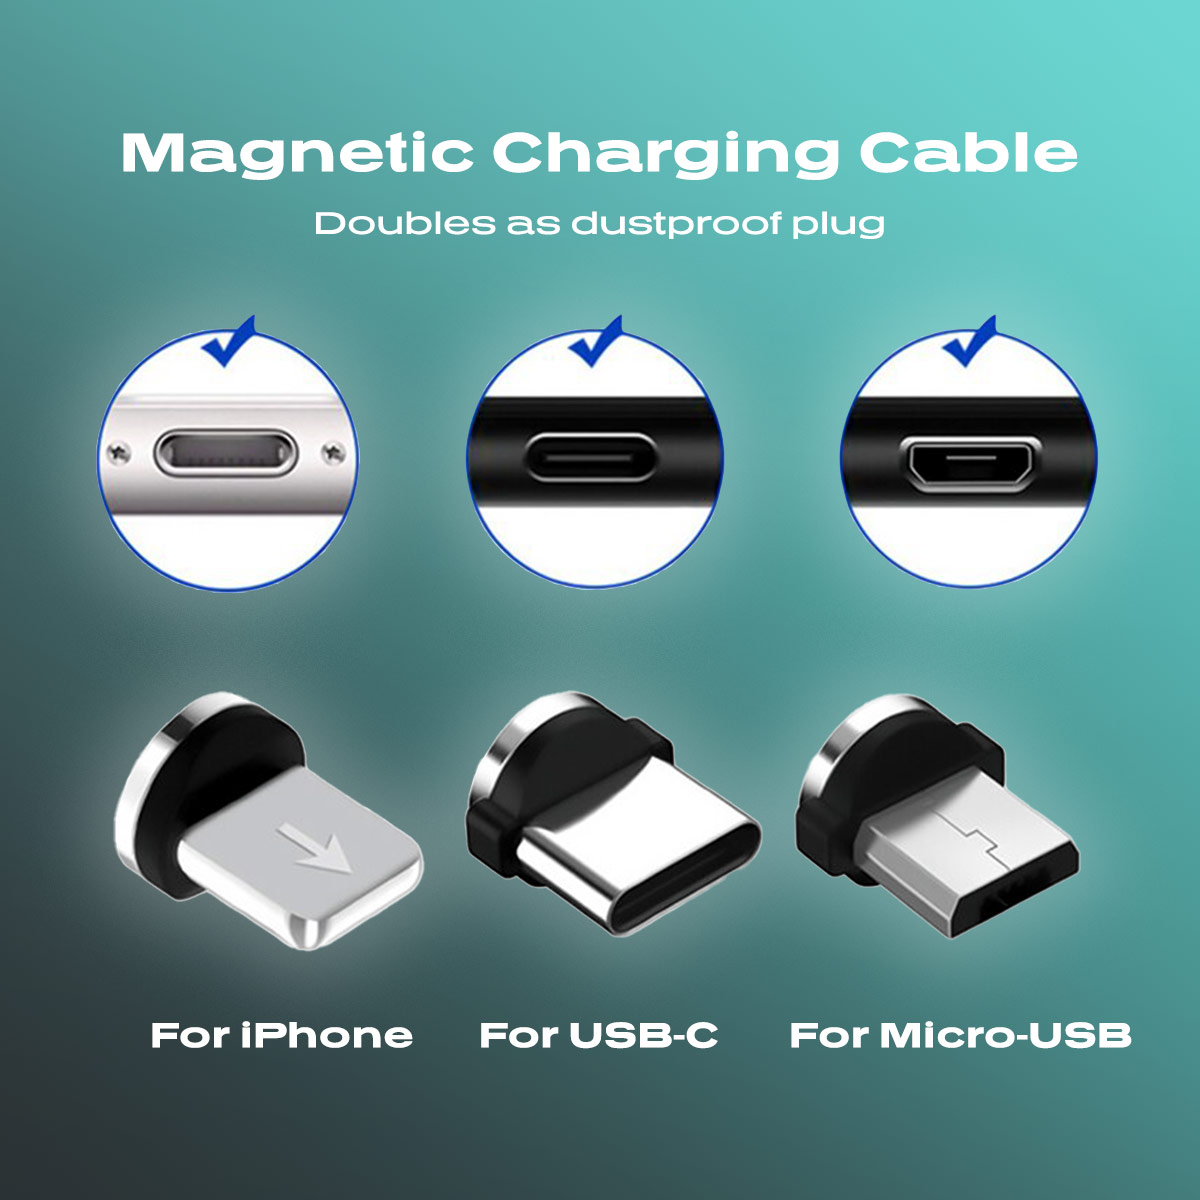 clip magnétiques pour tous les standards lighthning usb-c micro-usb